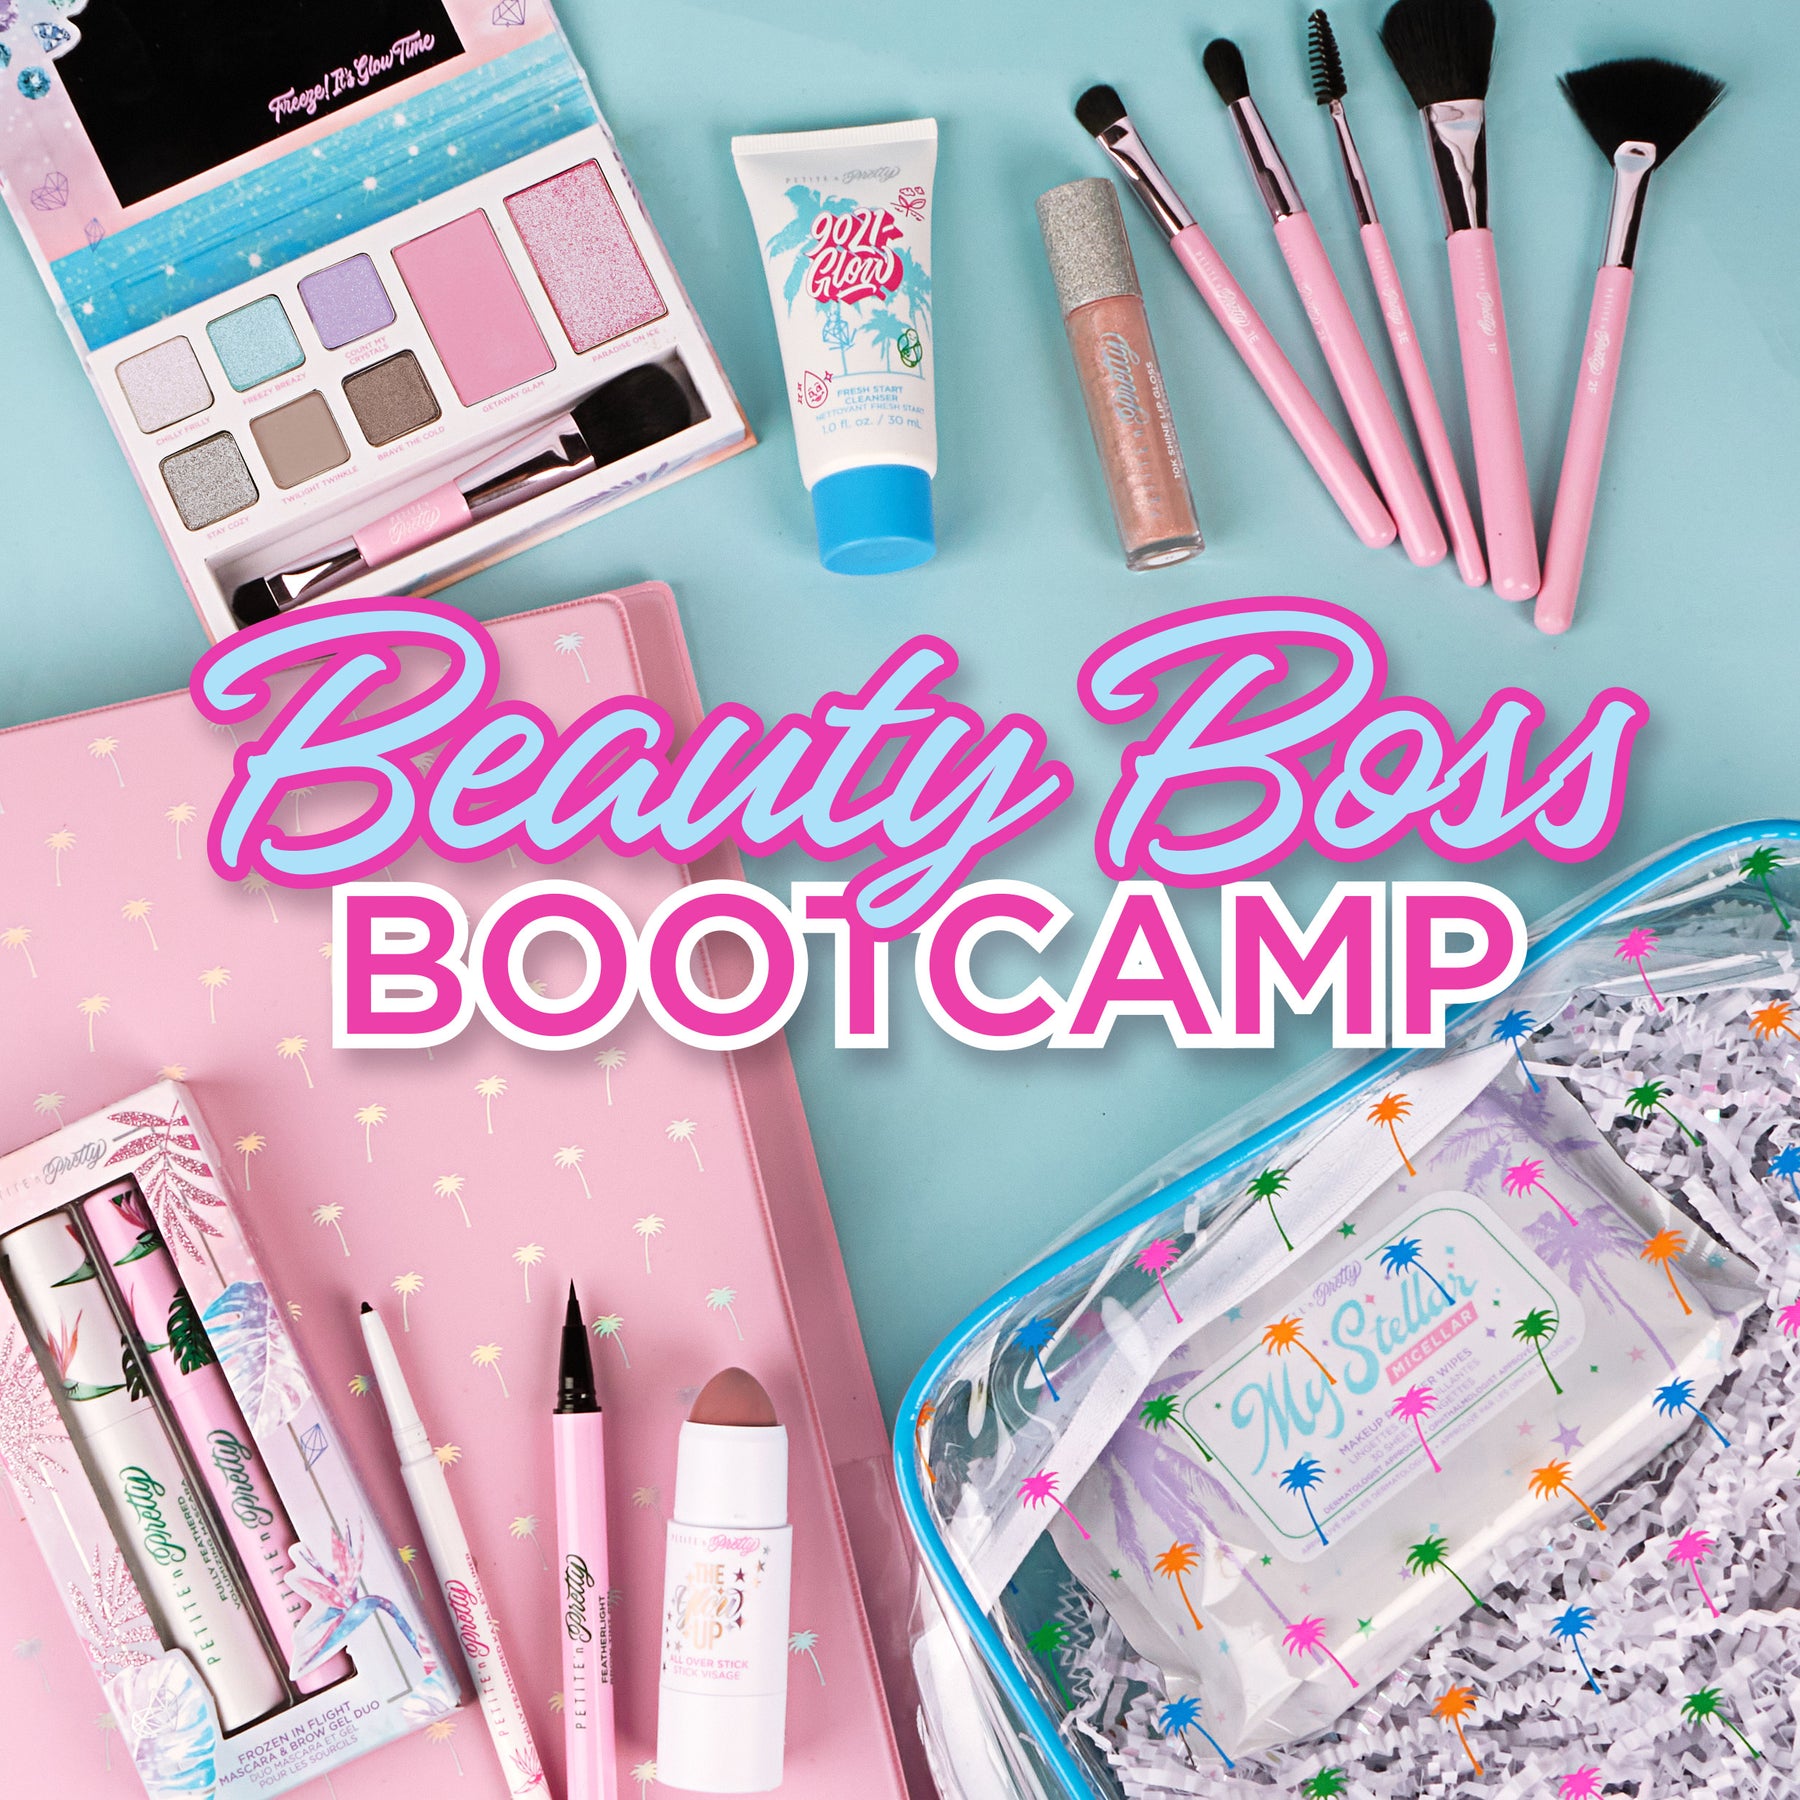 Beauty Boss Bootcamp